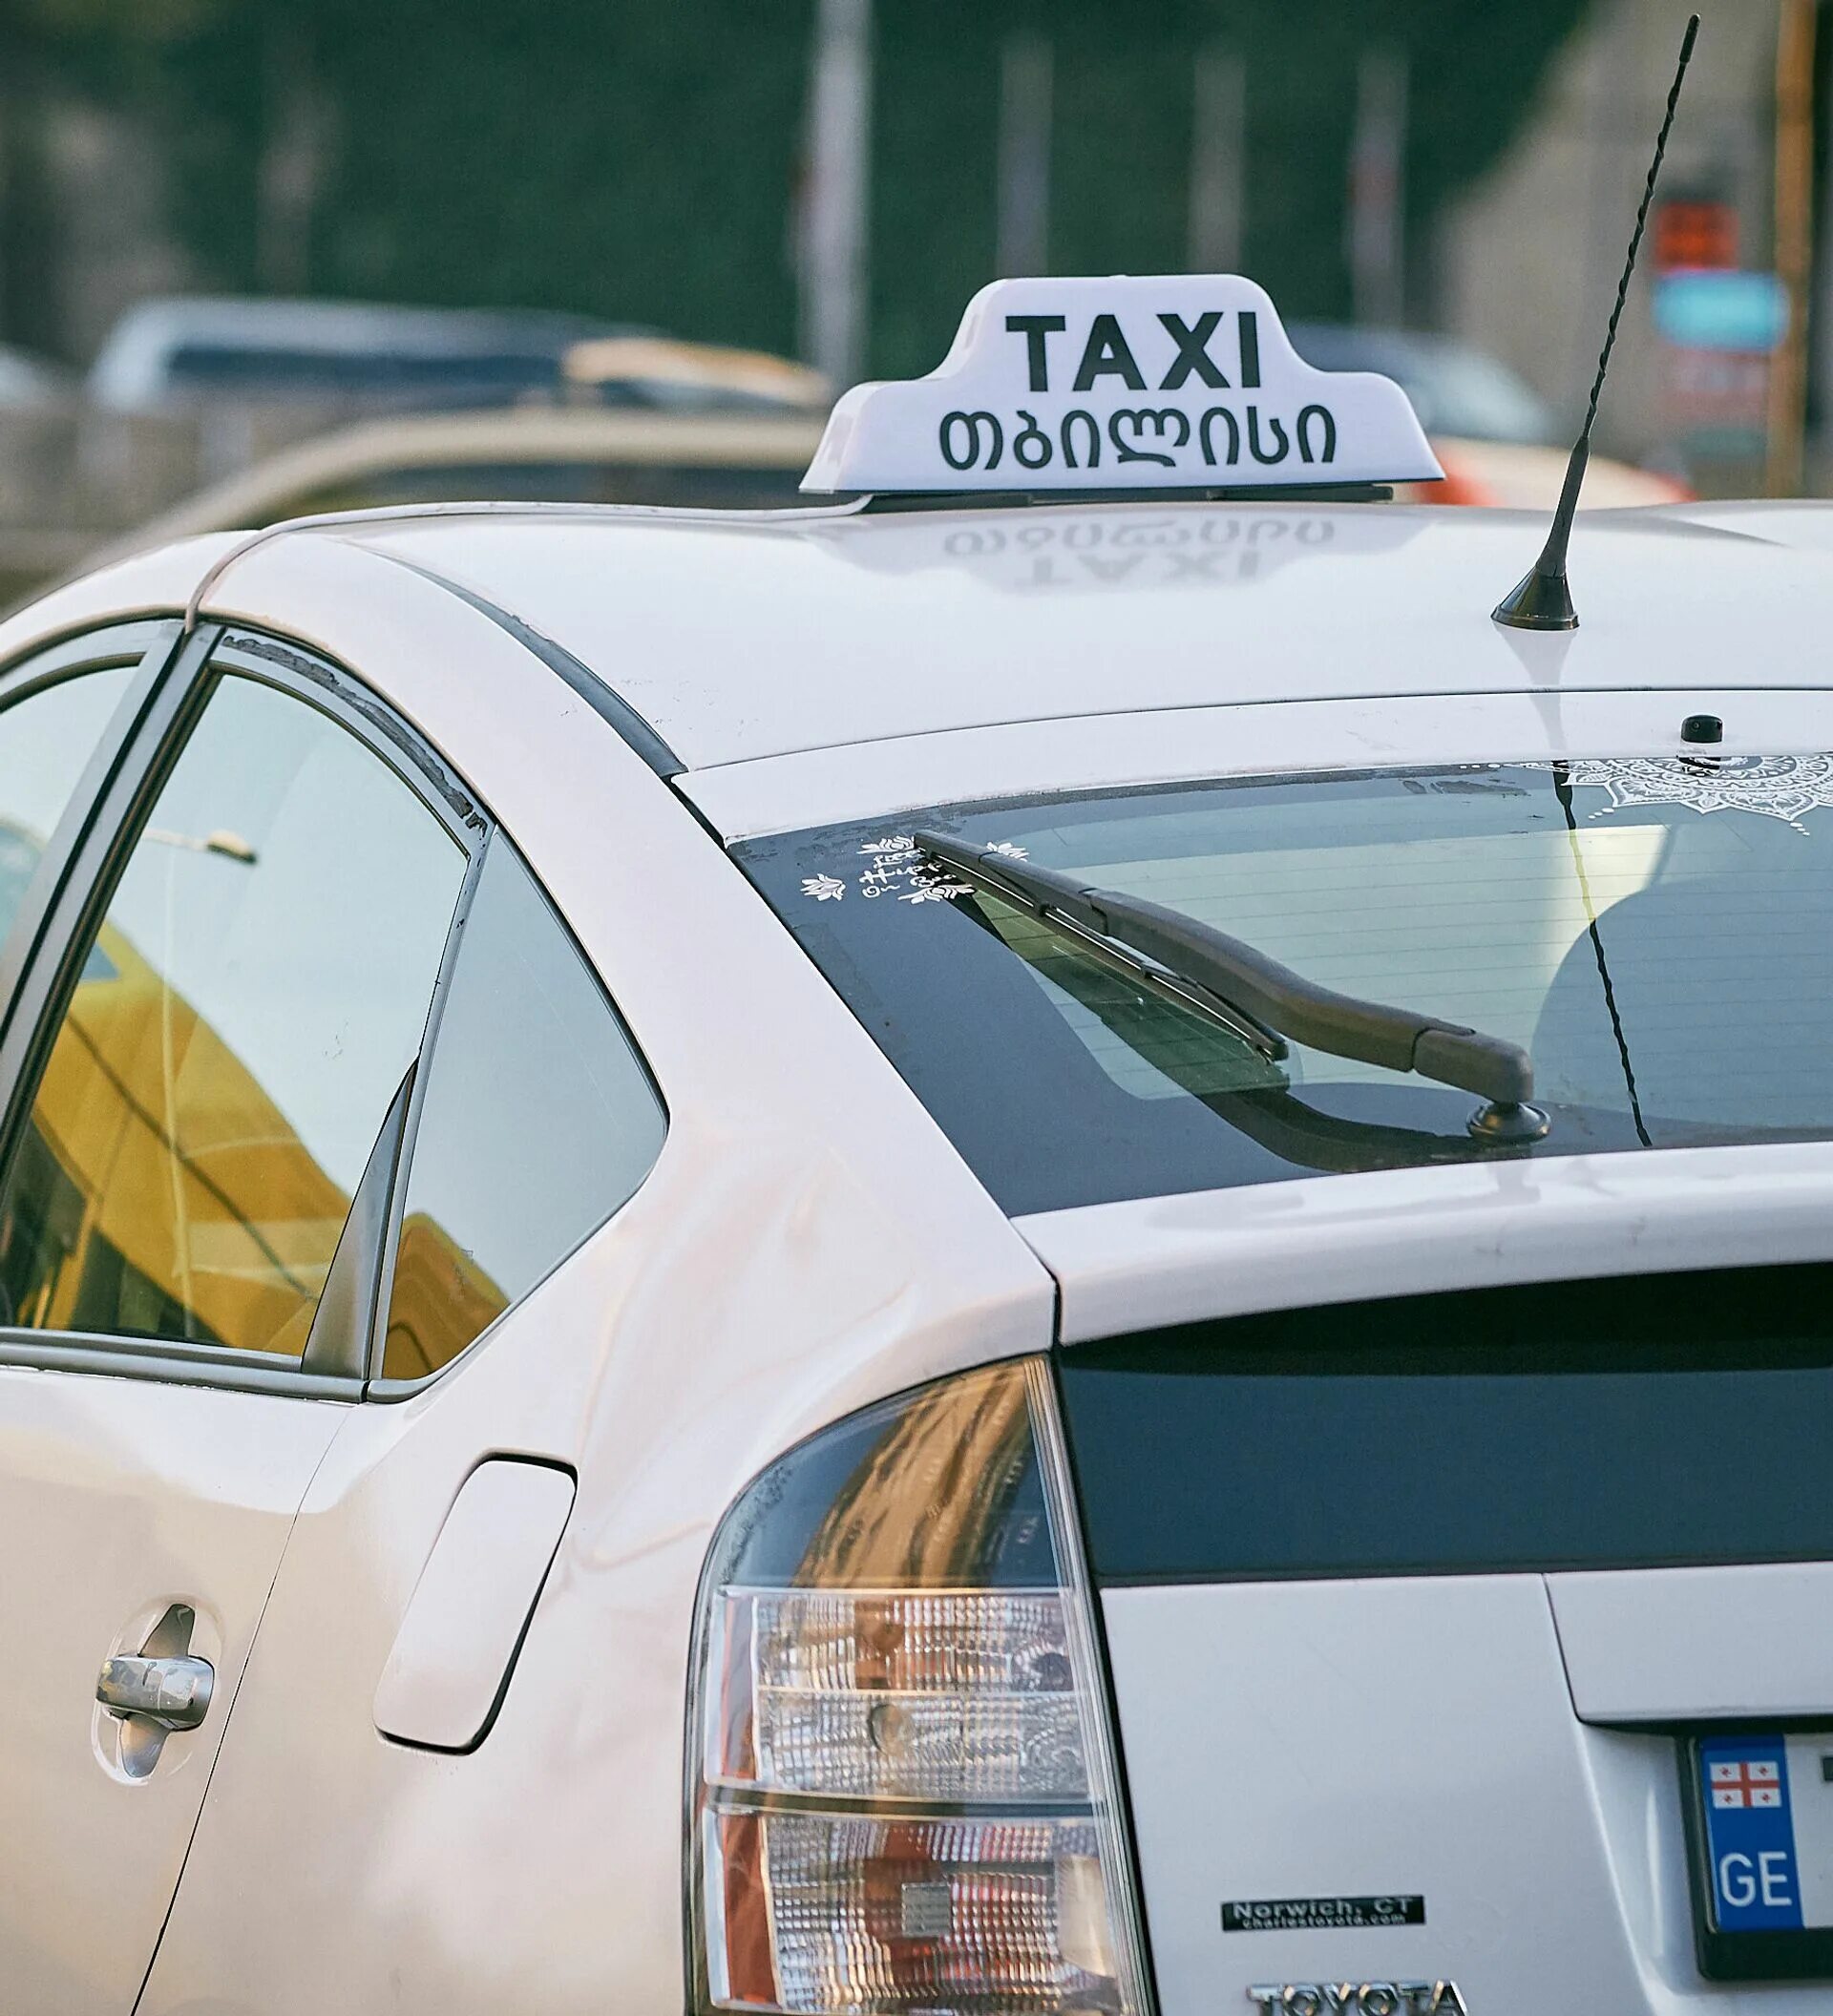 Такси в грузии. Такси в Тбилиси. Таксисты в Грузии. Грузинское такси фото.